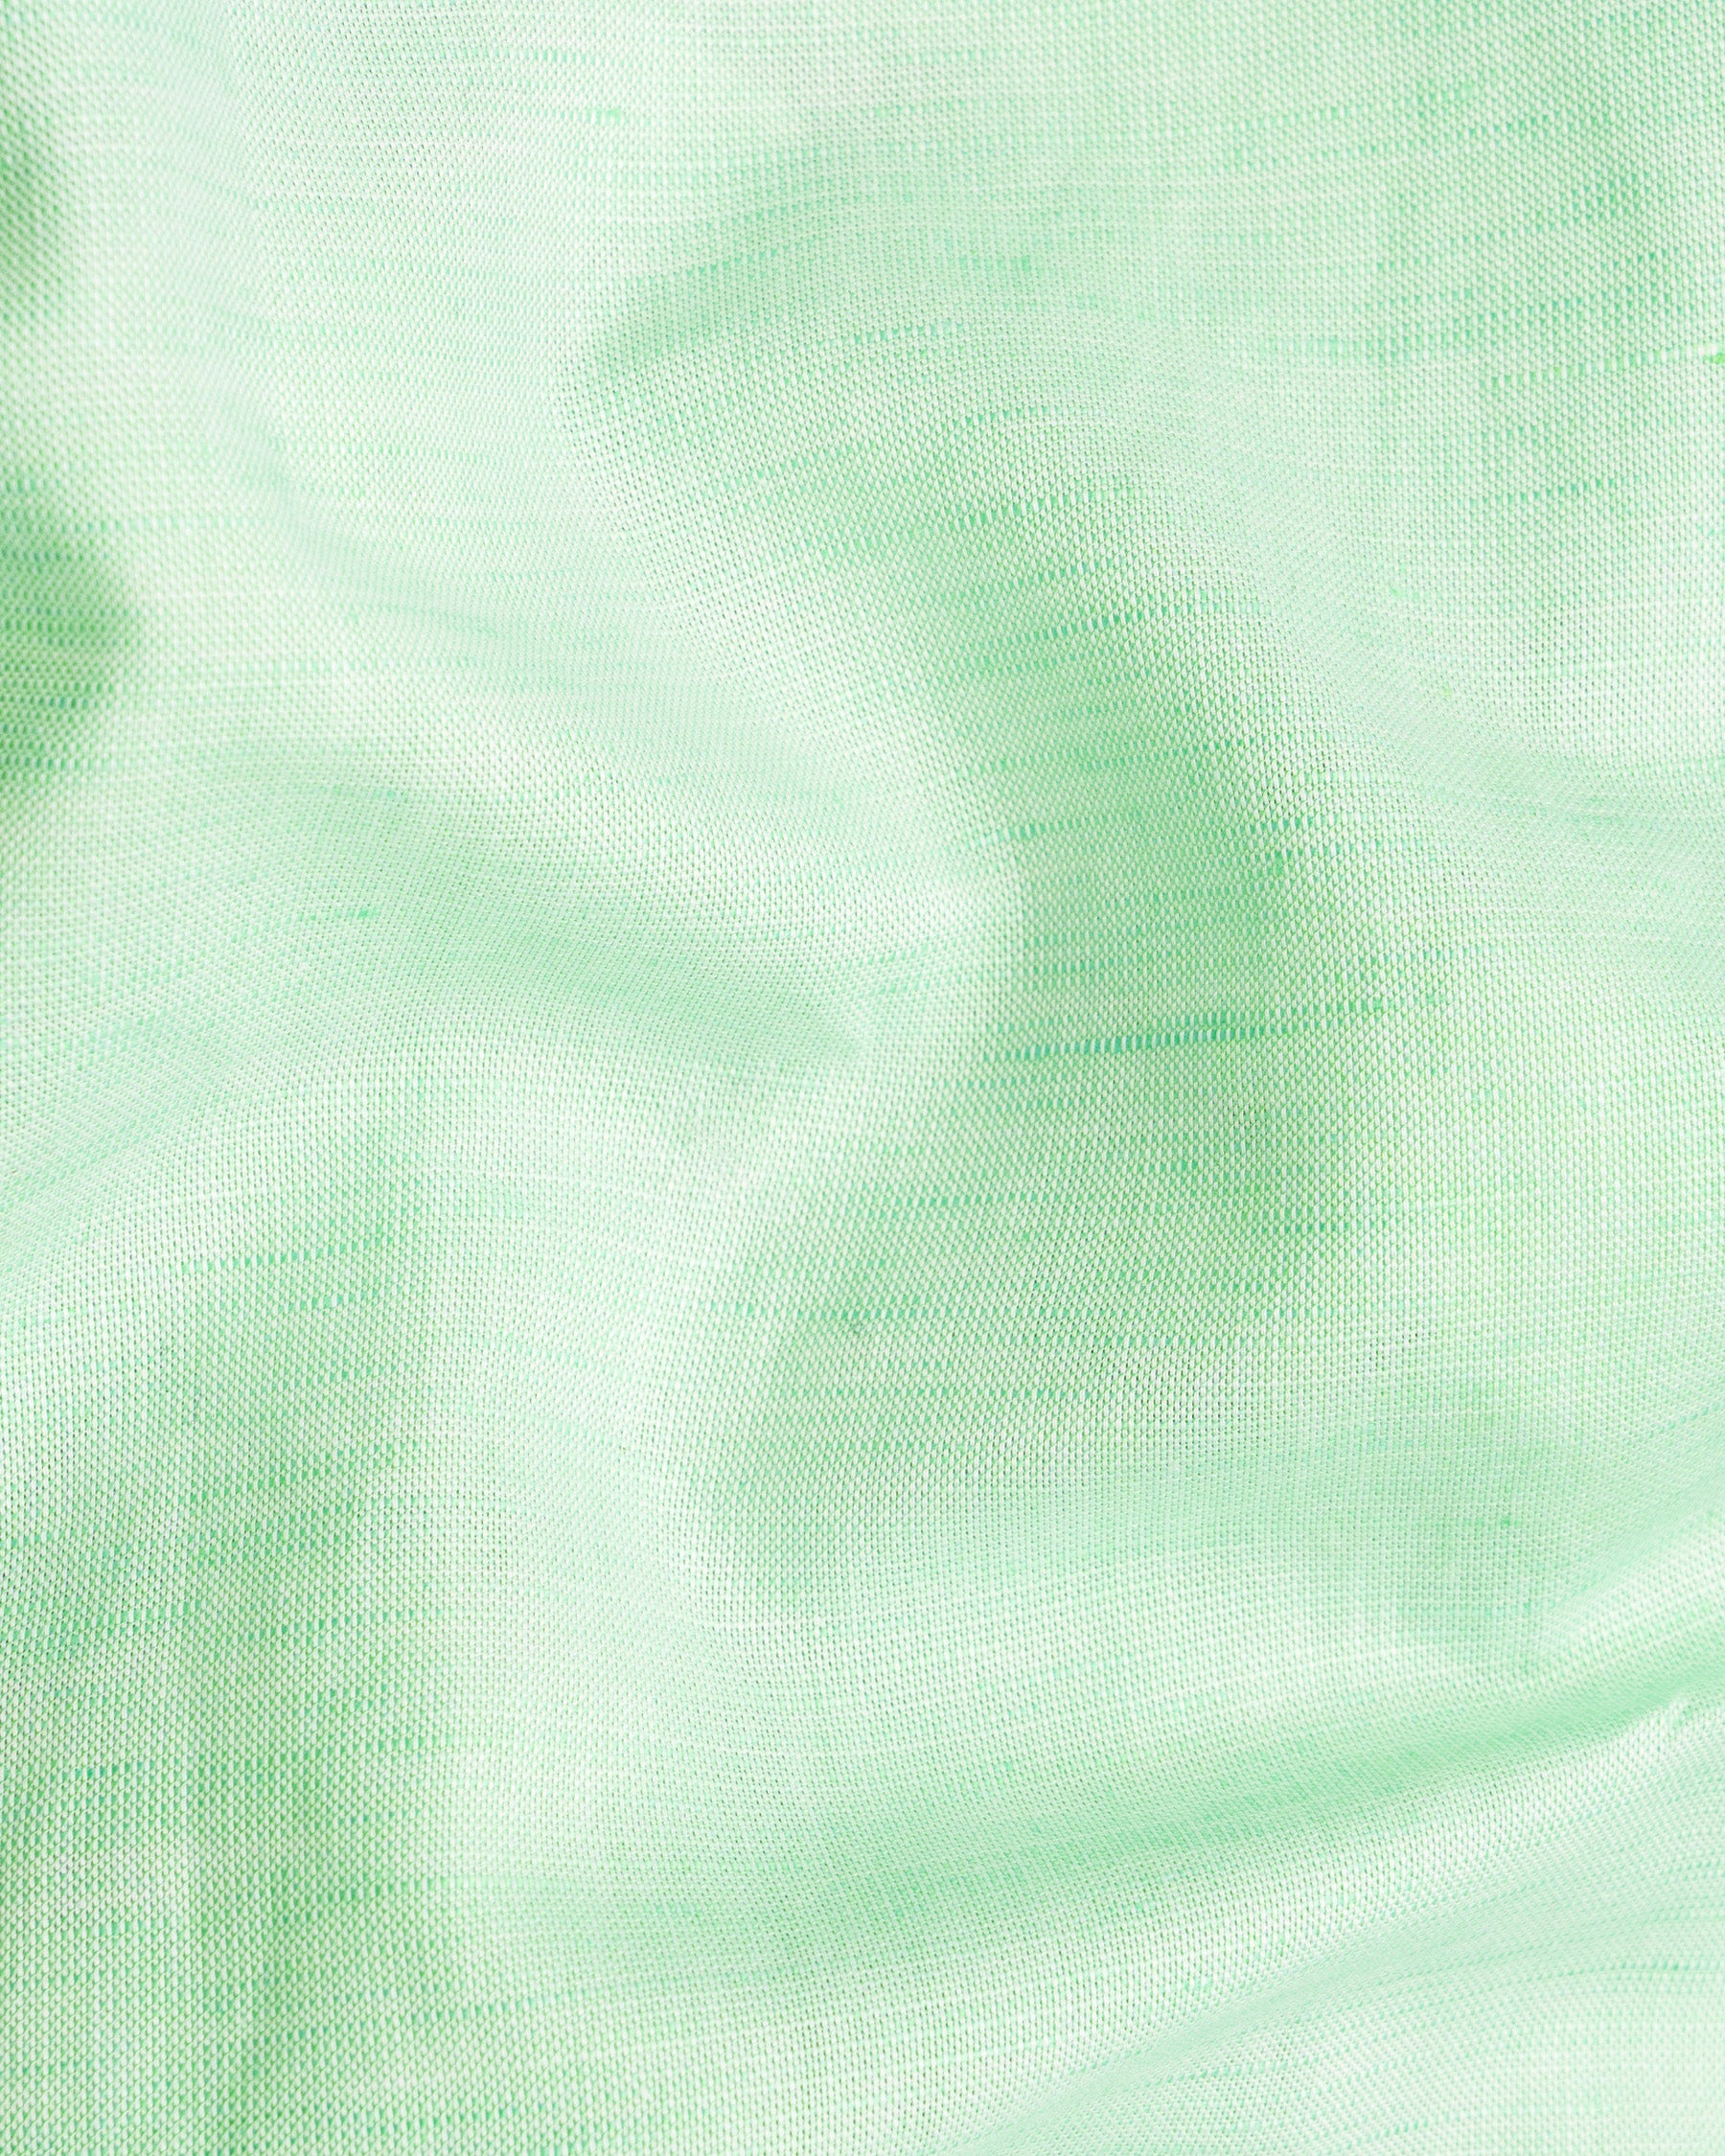 Chinook Green Luxurious Linen Shirt